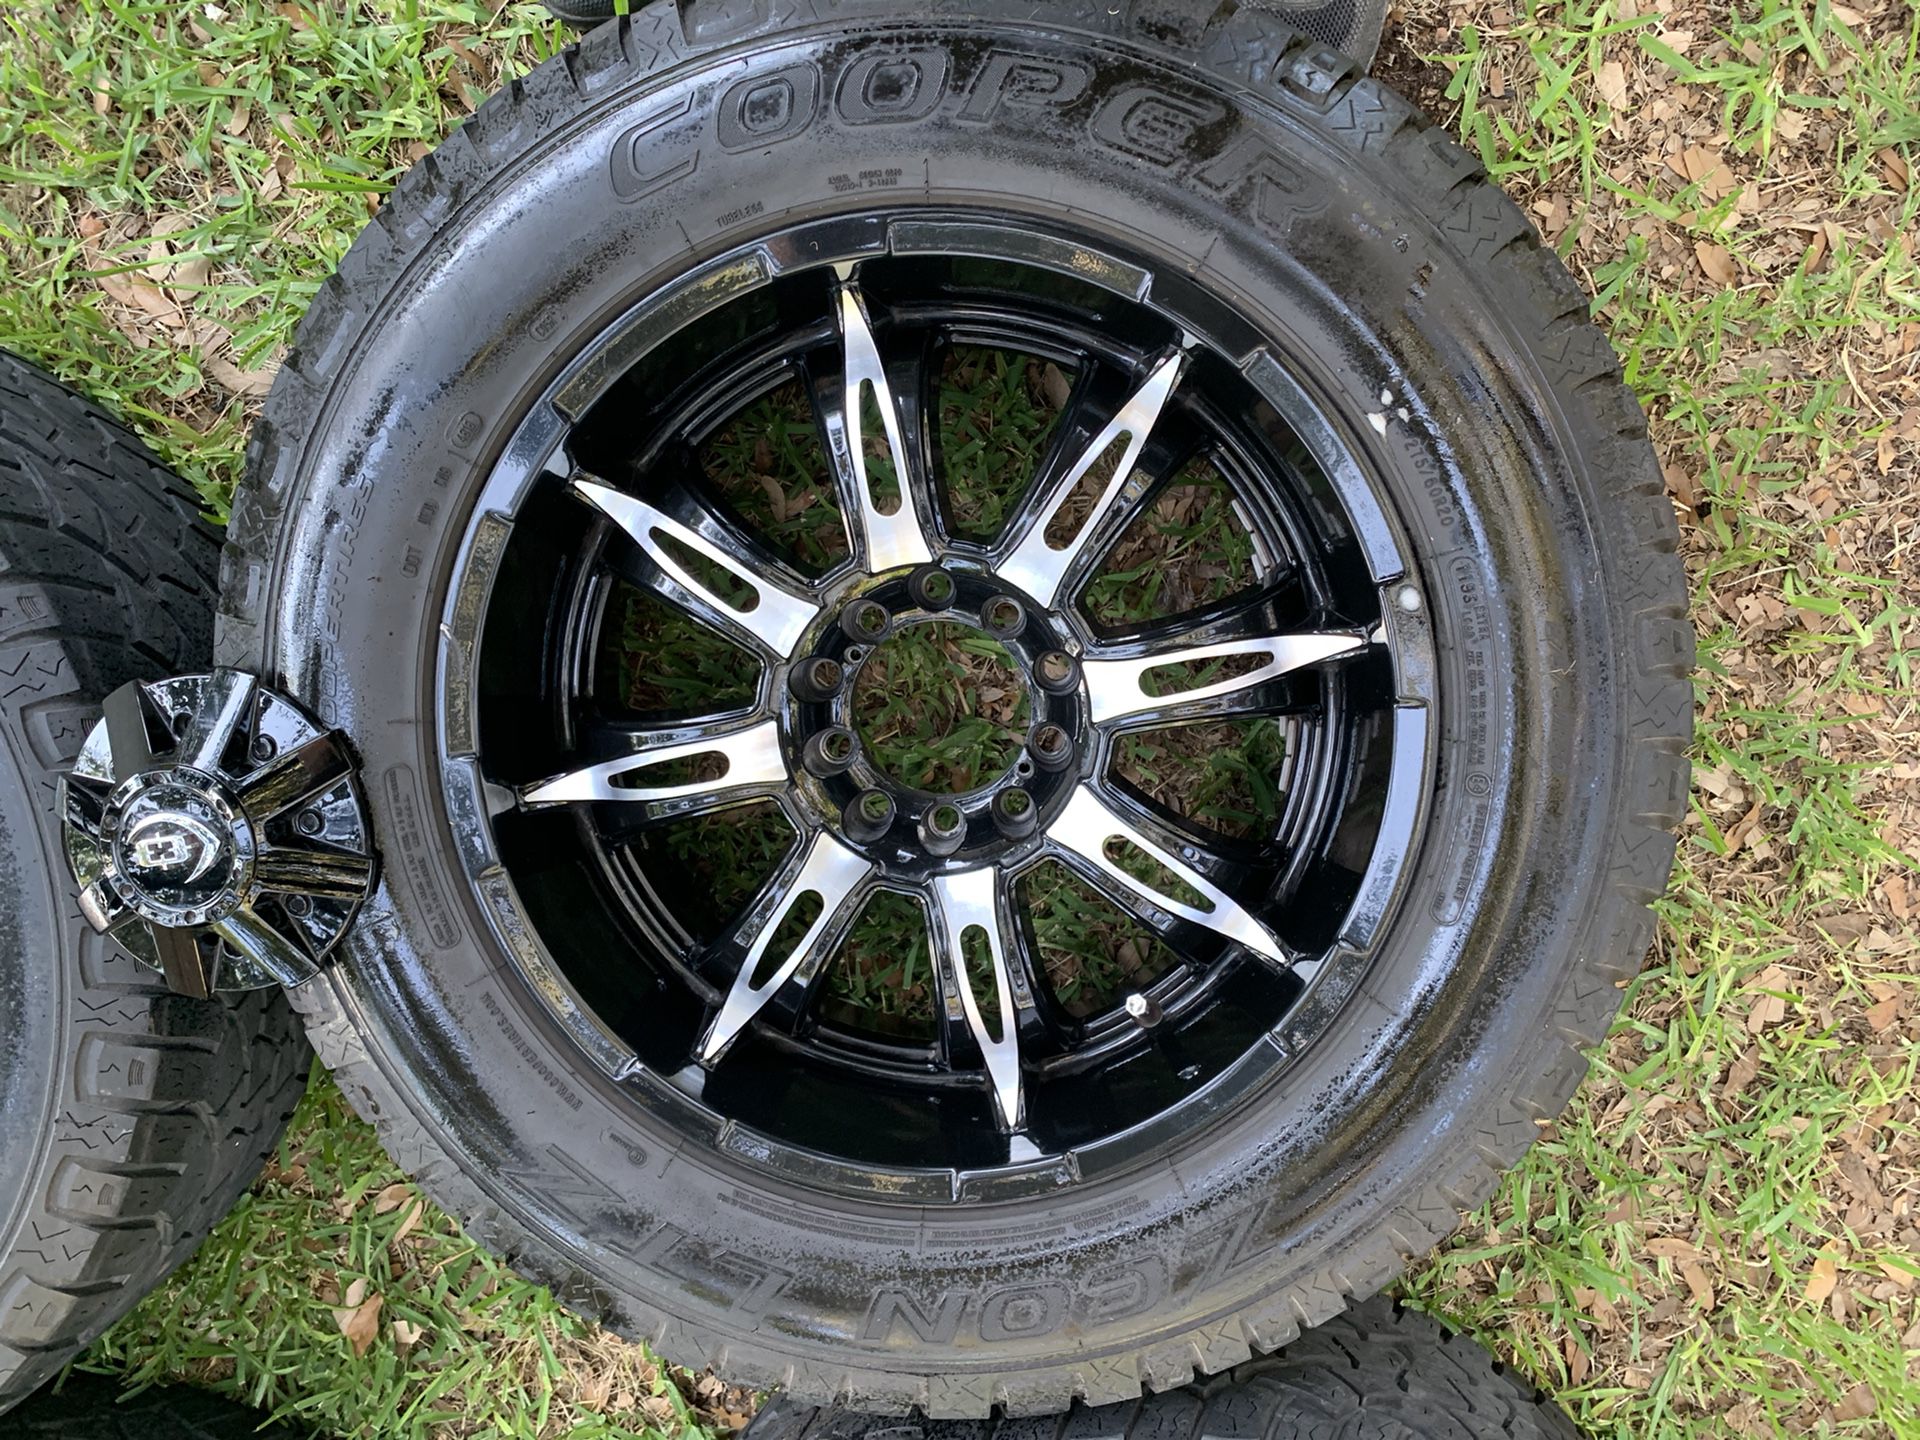 20” Vision Rims & Cooper tires